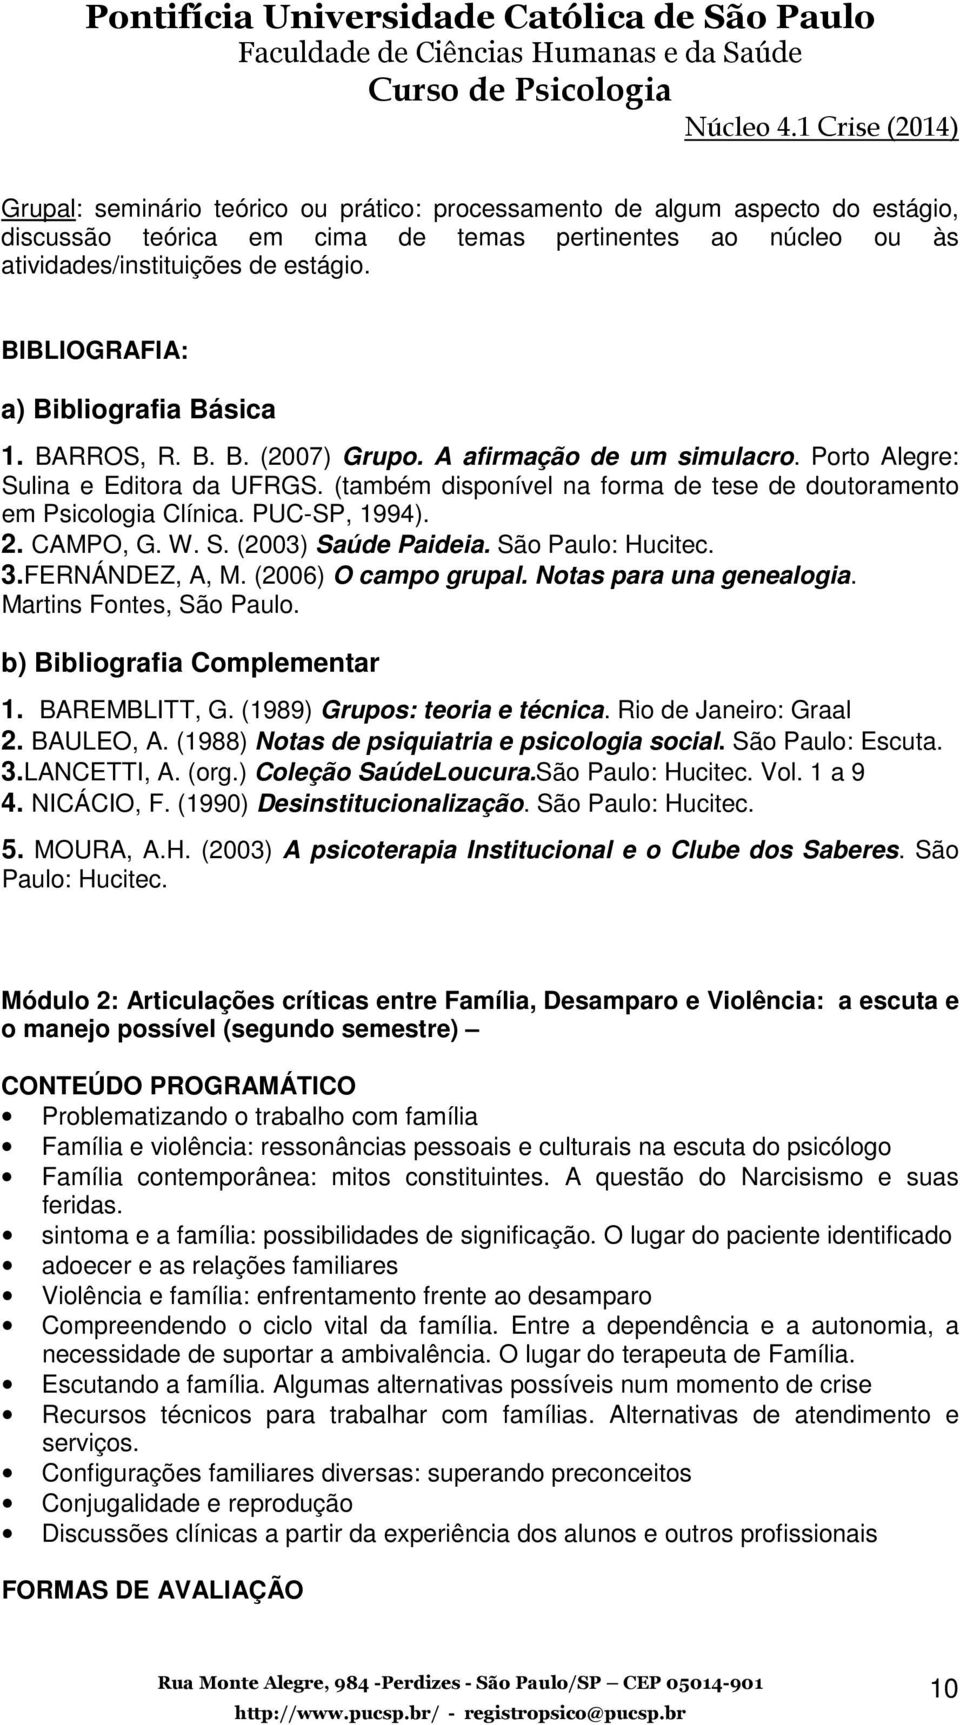 (também disponível na forma de tese de doutoramento em Psicologia Clínica. PUC-SP, 1994). 2. CAMPO, G. W. S. (2003) Saúde Paideia. São Paulo: Hucitec. 3.FERNÁNDEZ, A, M. (2006) O campo grupal.